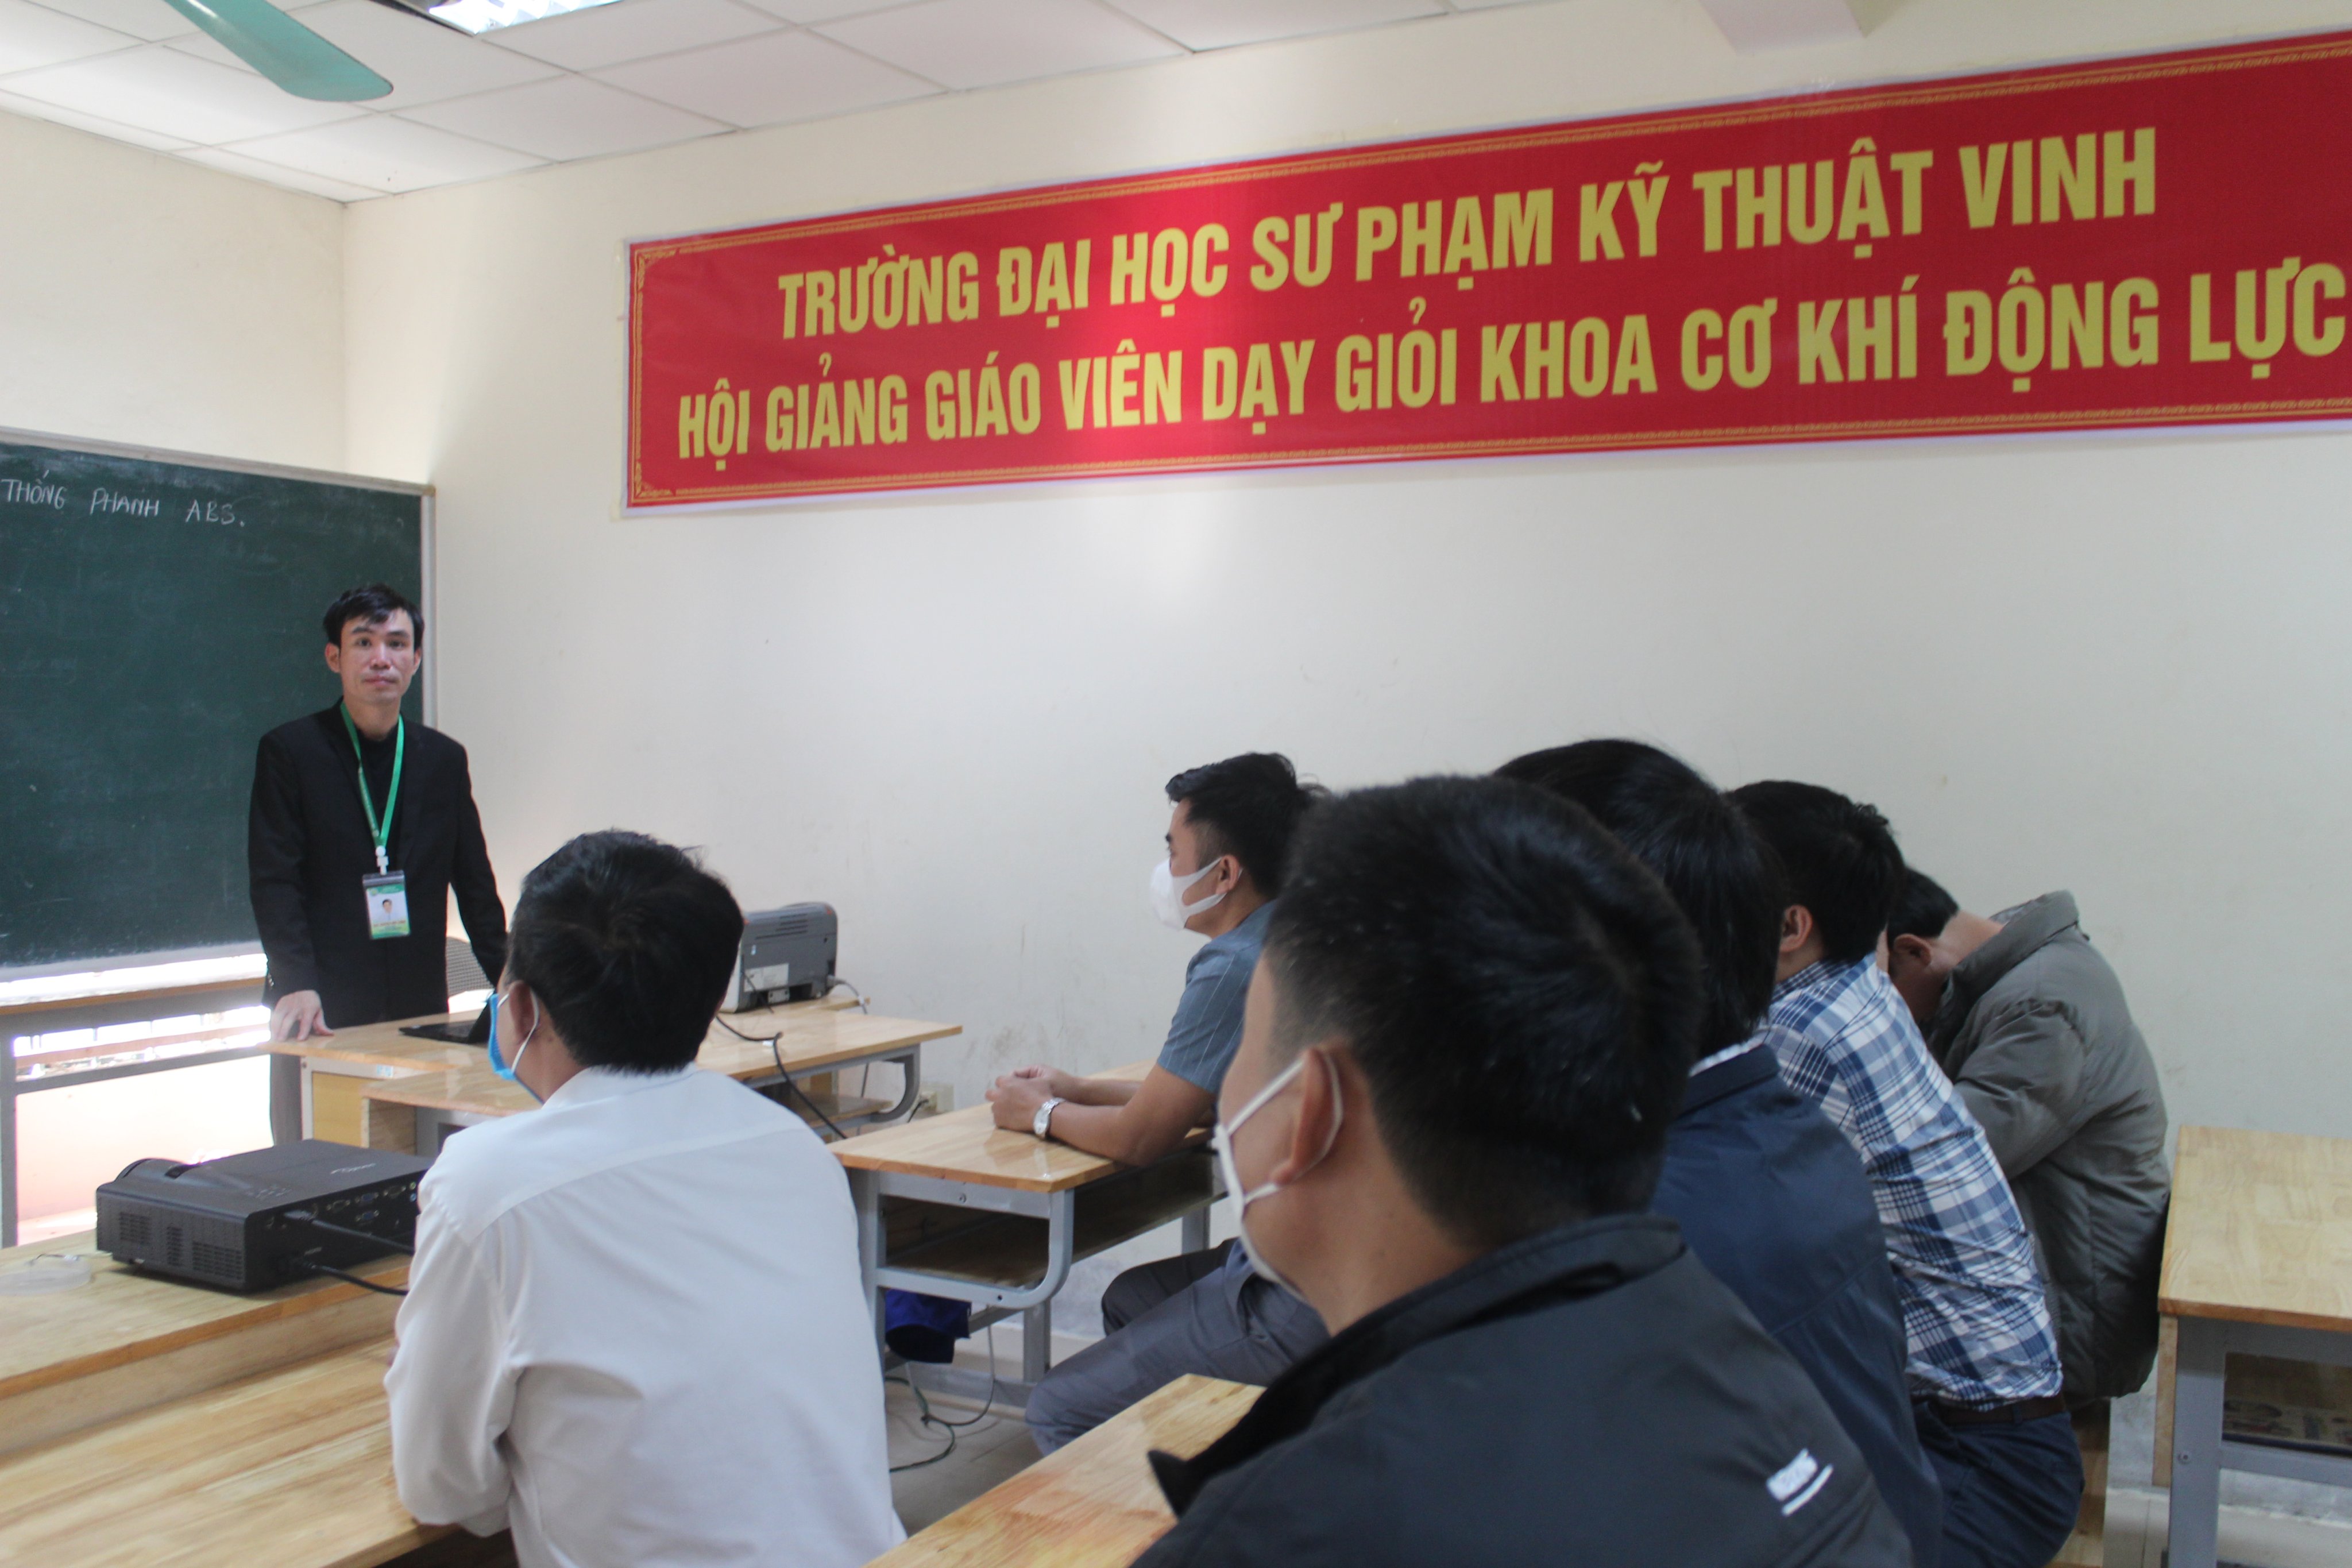 Trường Đại học Sư phạm Kỹ thuật Vinh sôi nổi hoạt động Hội giảng cấp Khoa tiến tới Hội giảng cấp Trường